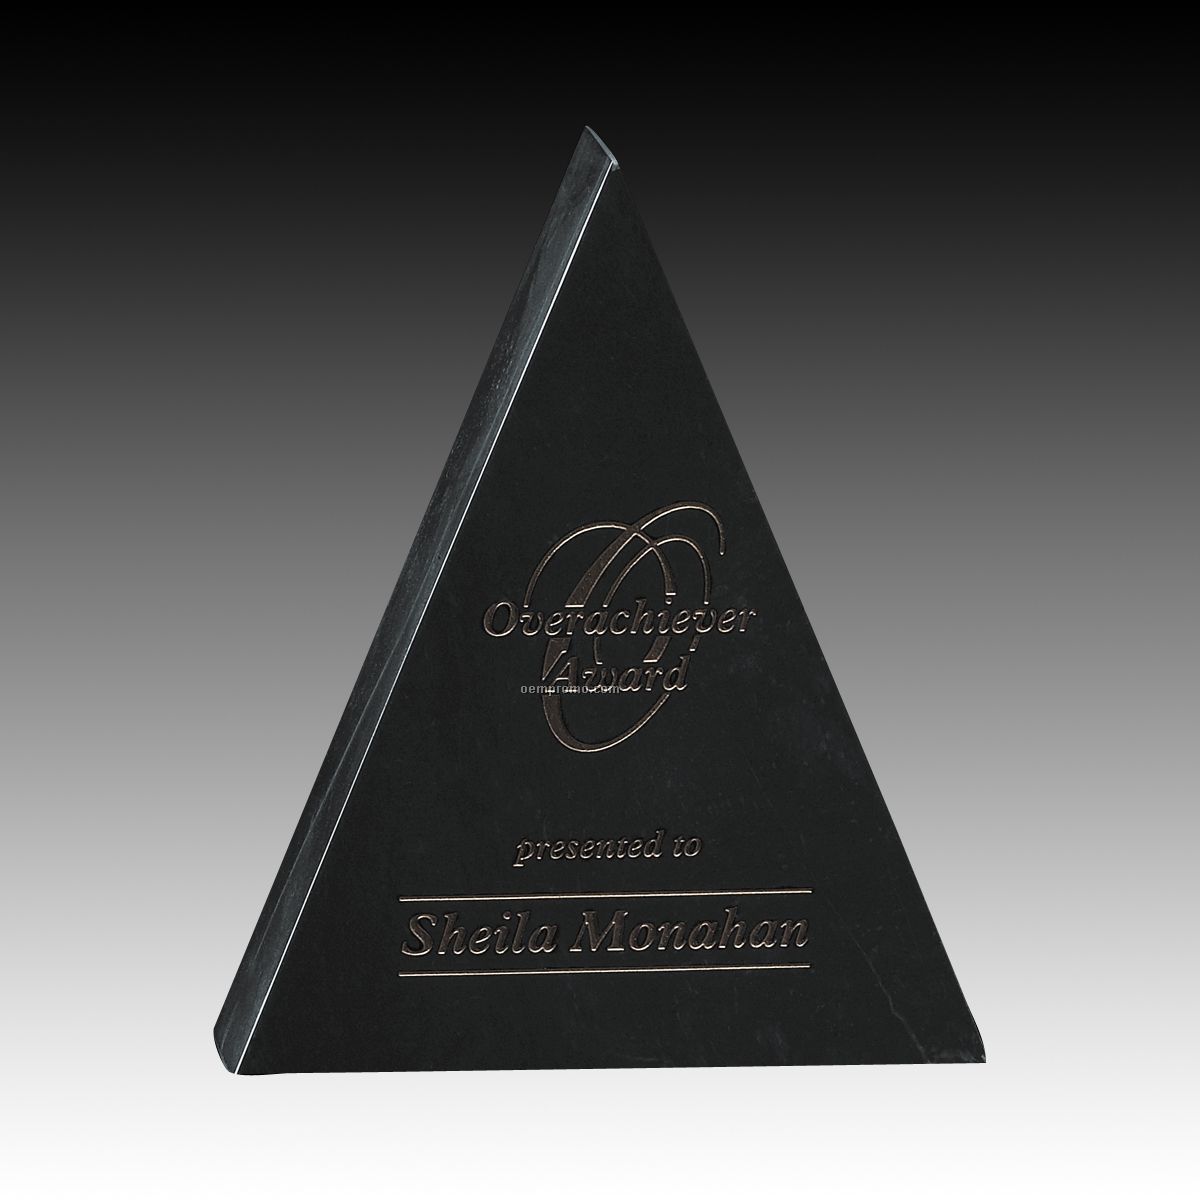 7" Hastings Marble Pyramid Award